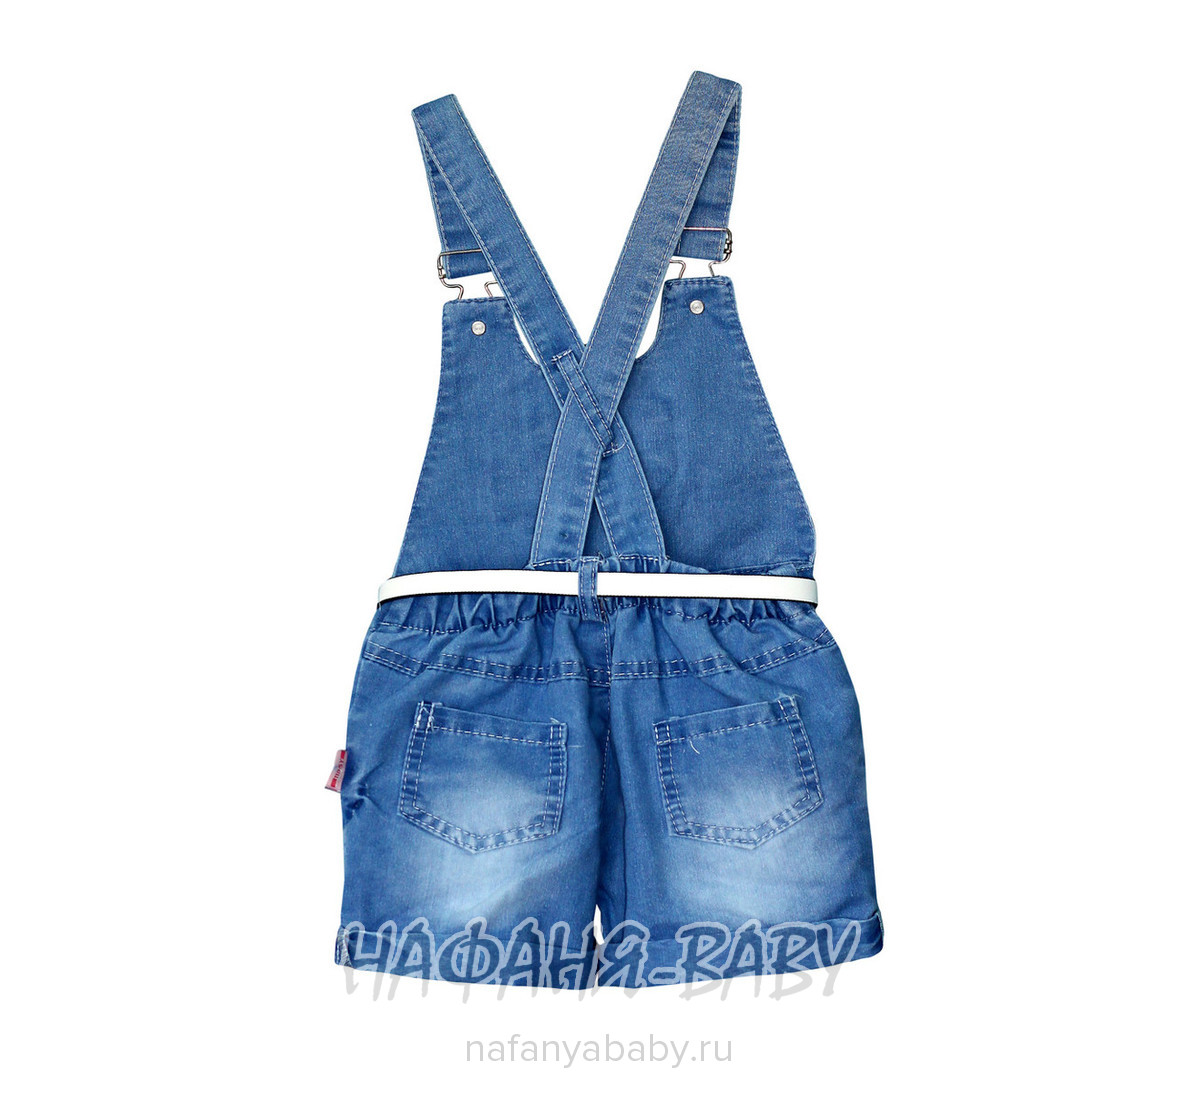 Детский джинсовый комбинезон-шорты CINCIR, купить в интернет магазине Нафаня. арт: 10312.